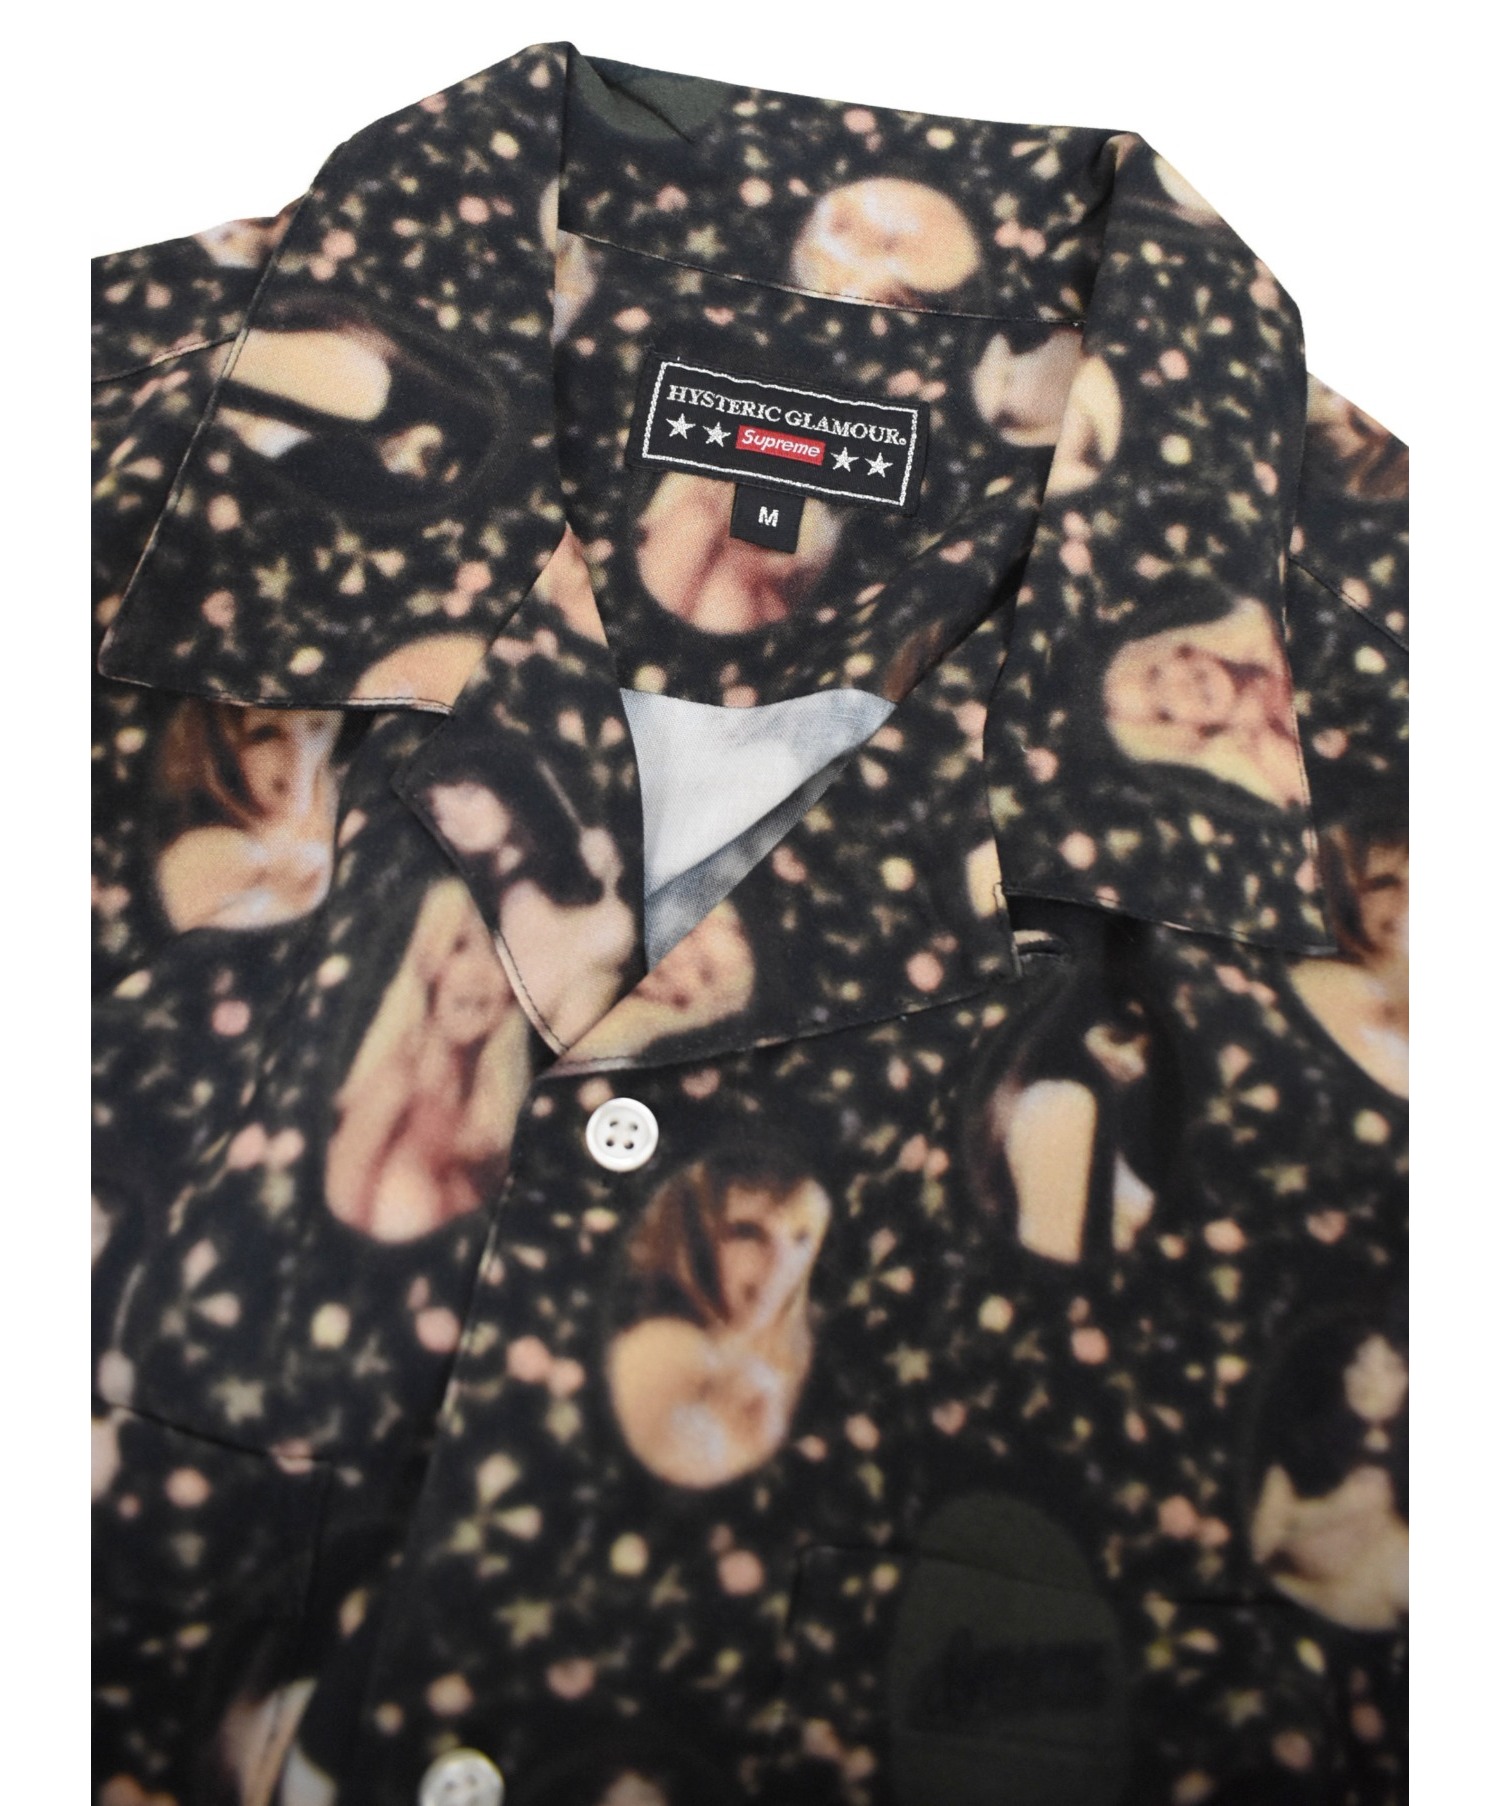 Supreme×HYSTERICGLAMOUR (シュプリーム×ヒステリックグラマー) ブラードガールレーヨンシャツ ブラック サイズ:M 21SS  Blurred Girls Rayon S/S Shirts